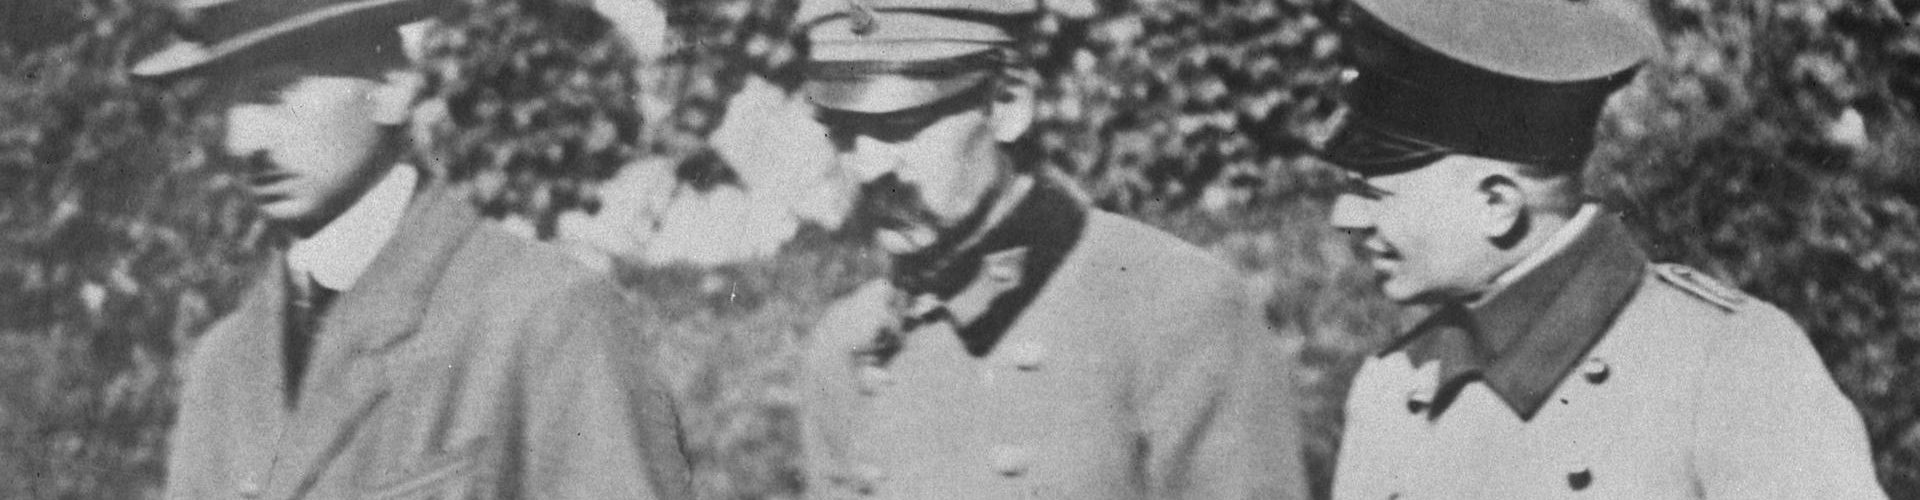 Józef Piłsudski na zdjęciu wykonanym w czasie jego internowania (domena publiczna)